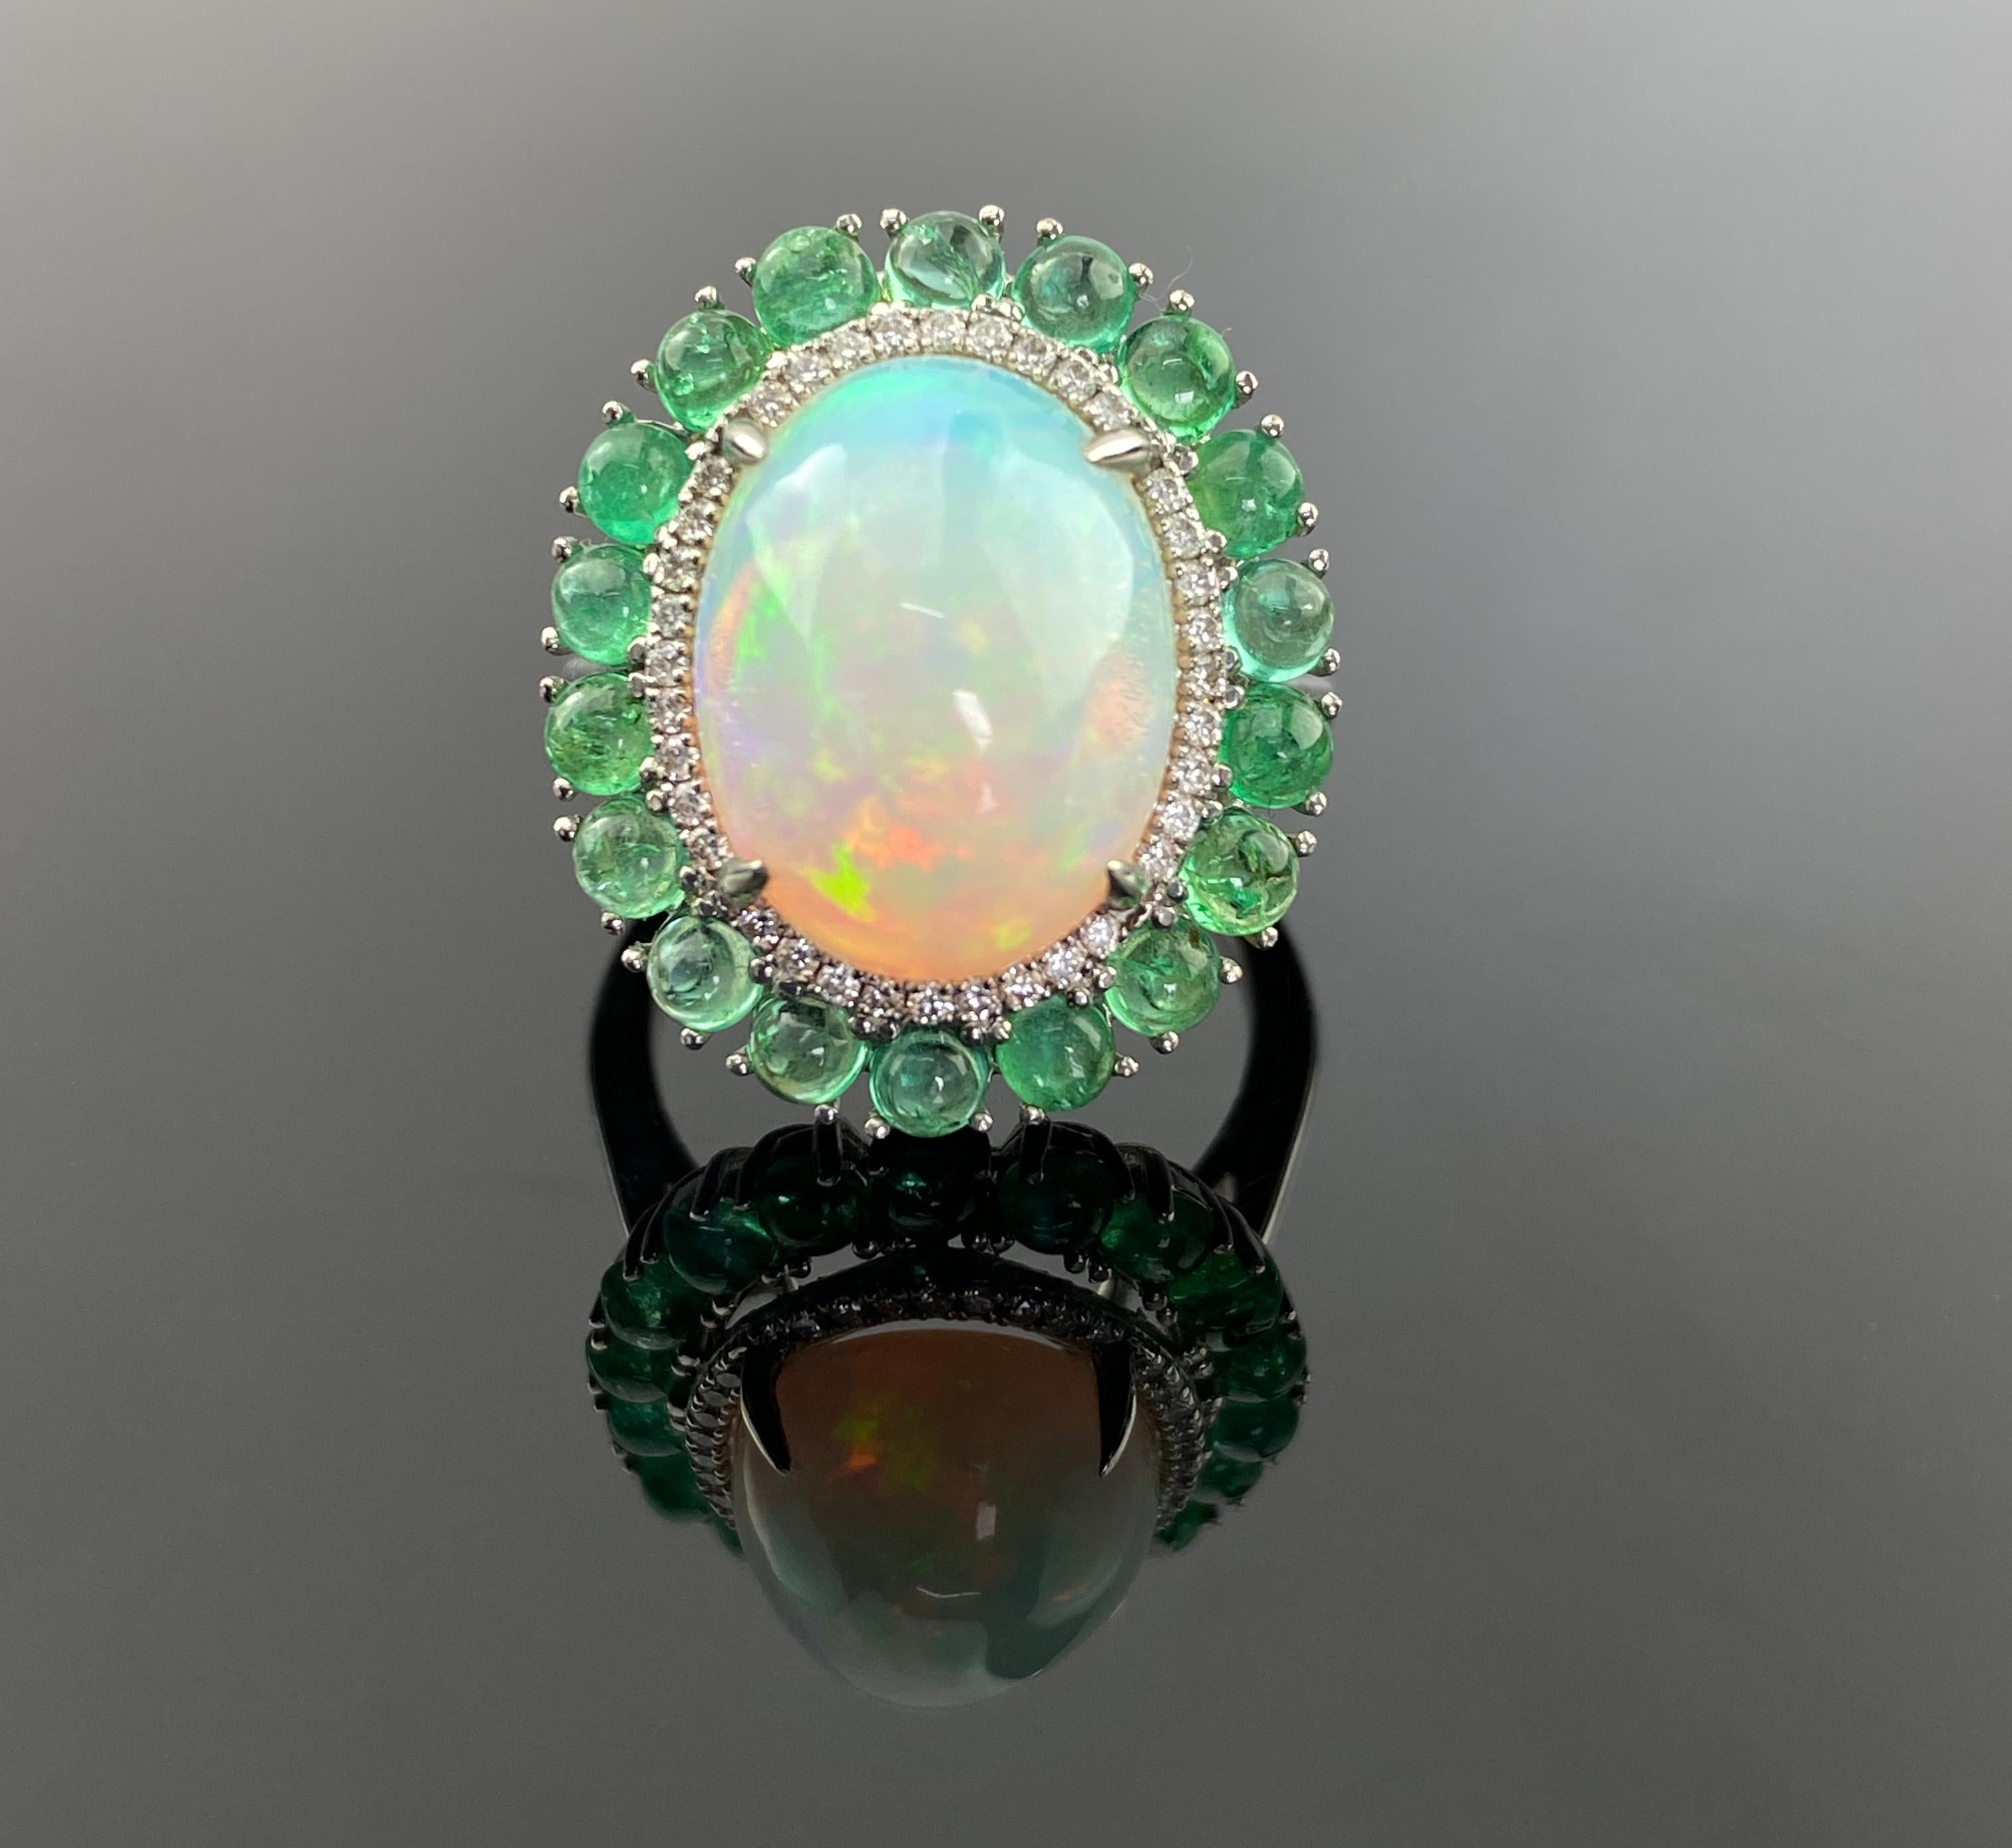 Bague de cocktail en cabochon d'opale et d'émeraude de Colombie, avec diamants blancs. Cette bague enchanteresse allie le vert luxuriant de l'émeraude à la beauté captivante d'une opale de forme ovale en son cœur. 

Détails :

Or 18K - 8,13 grammes